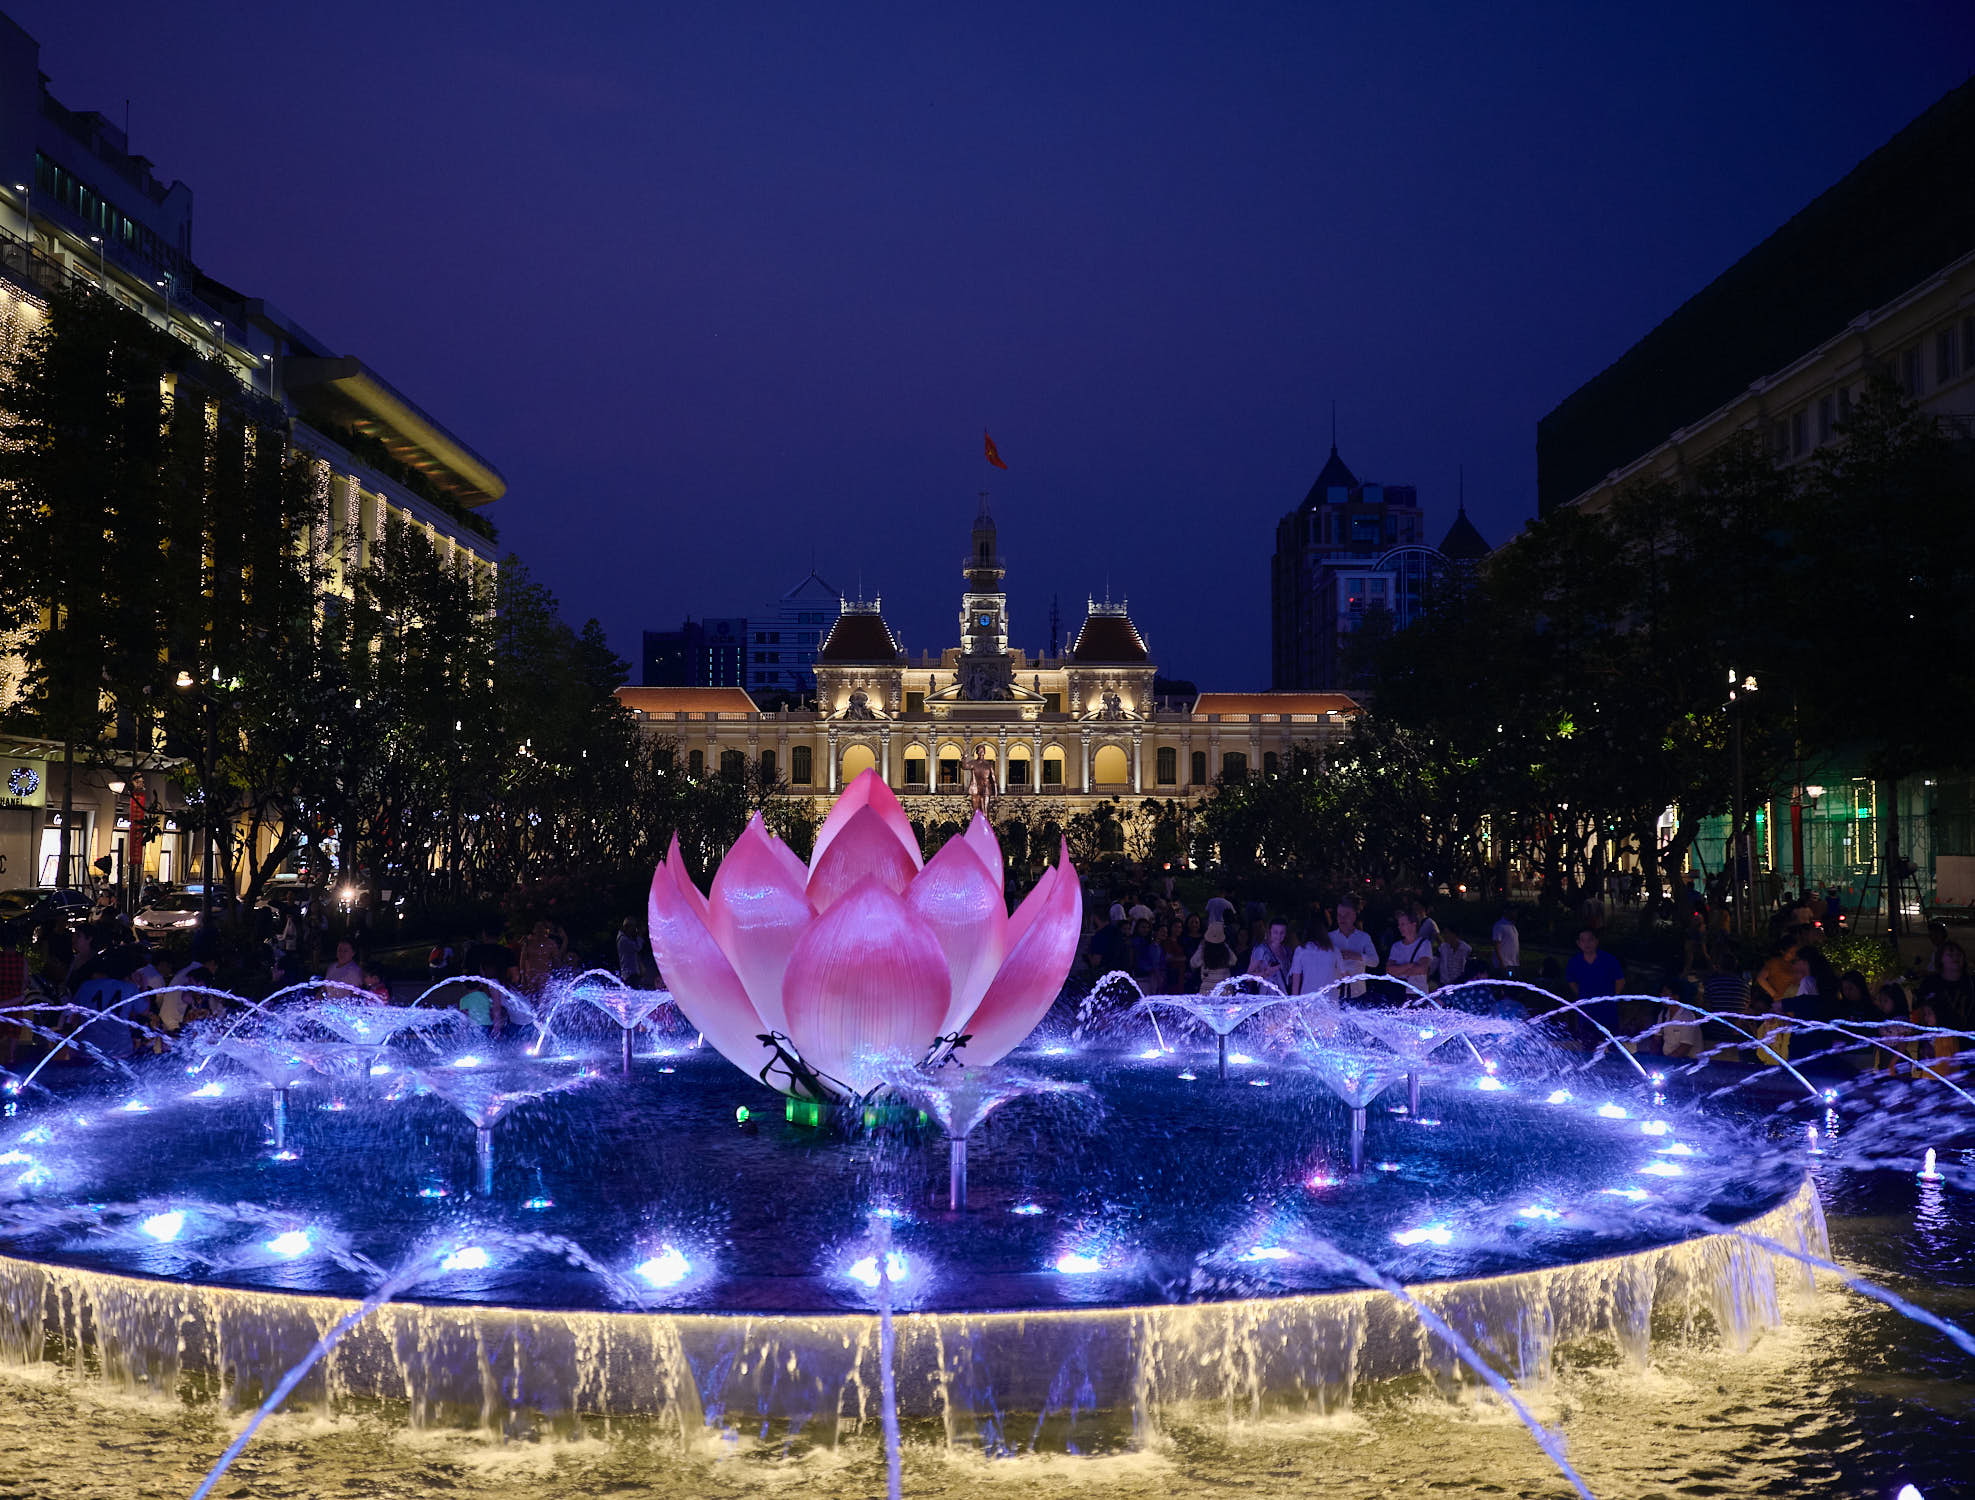 Lotus flower fountain Saigon, Vietnam